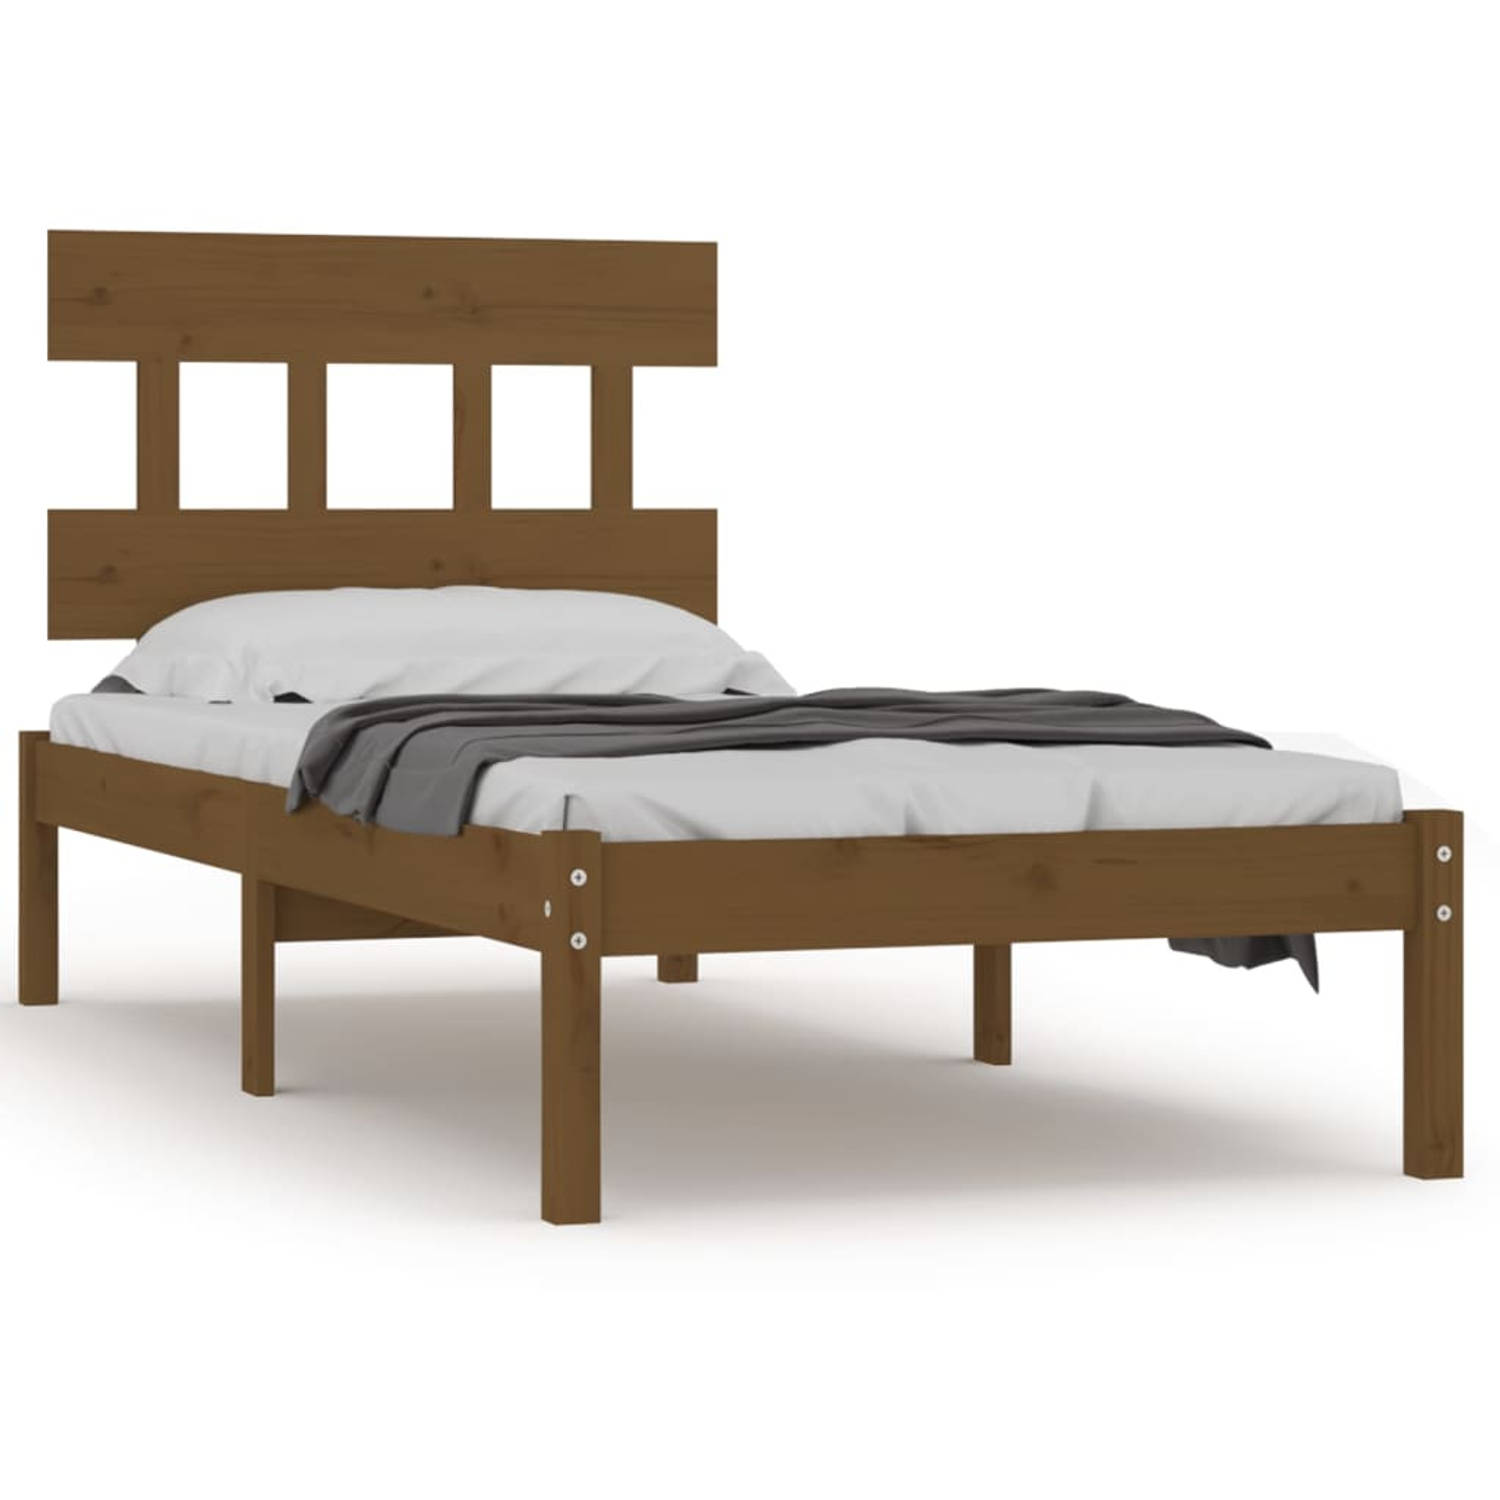 The Living Store Bedframe massief hout honingbruin 75x190 cm 2FT6 Small Single - Bedframe - Bedframes - Eenpersoonsbed - Bed - Bedombouw - Frame - Bed Frame - Ledikant - Bedframe M